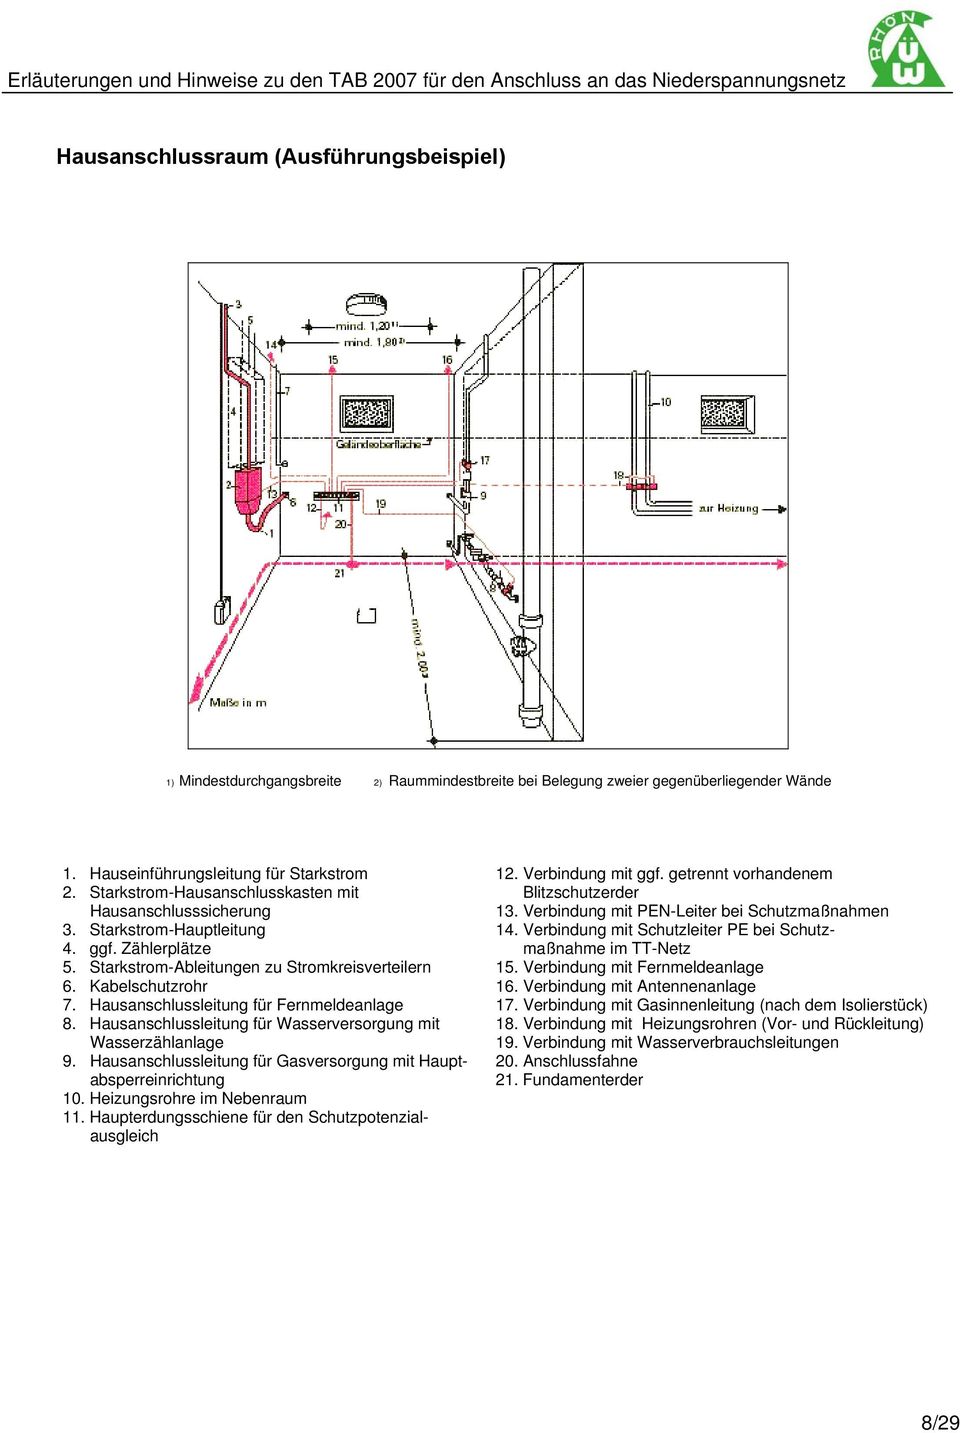 Verbindung mit Schutzleiter PE bei Schutz- 4. ggf. Zählerplätze maßnahme im TT-Netz 5. Starkstrom-Ableitungen zu Stromkreisverteilern 15. Verbindung mit Fernmeldeanlage 6. Kabelschutzrohr 16.